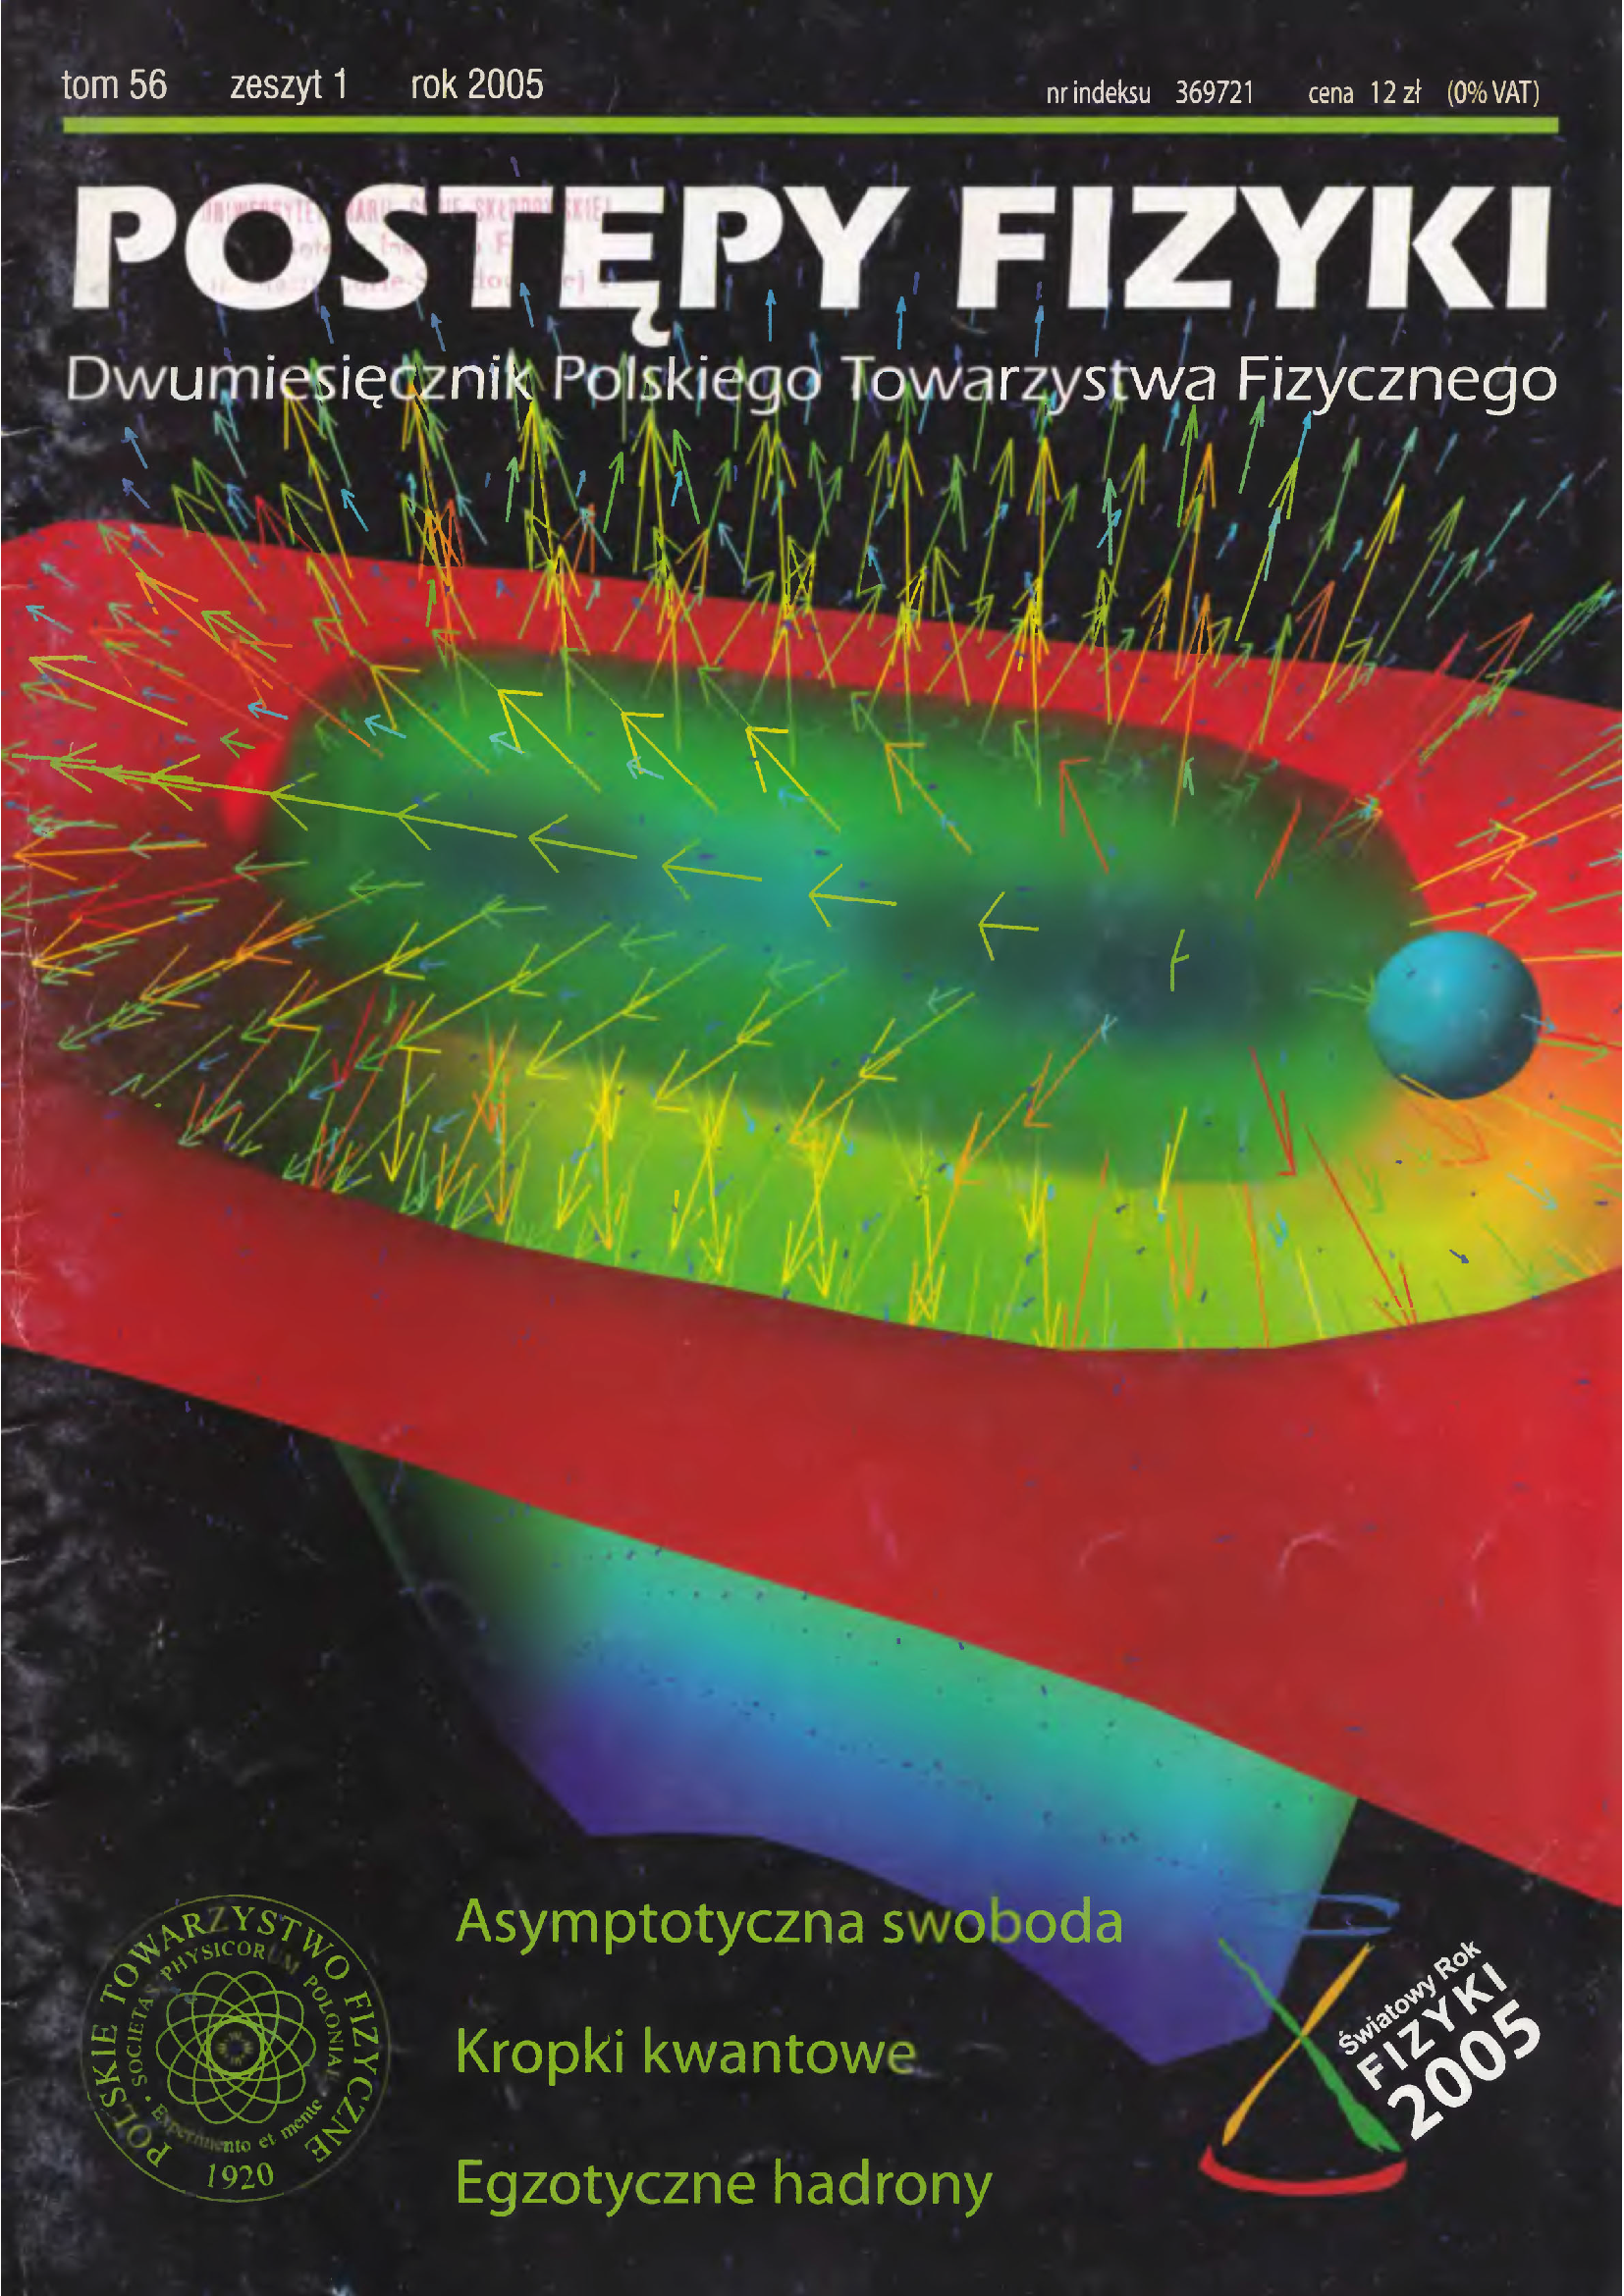 Postępy Fizyki 56 (1) 2005